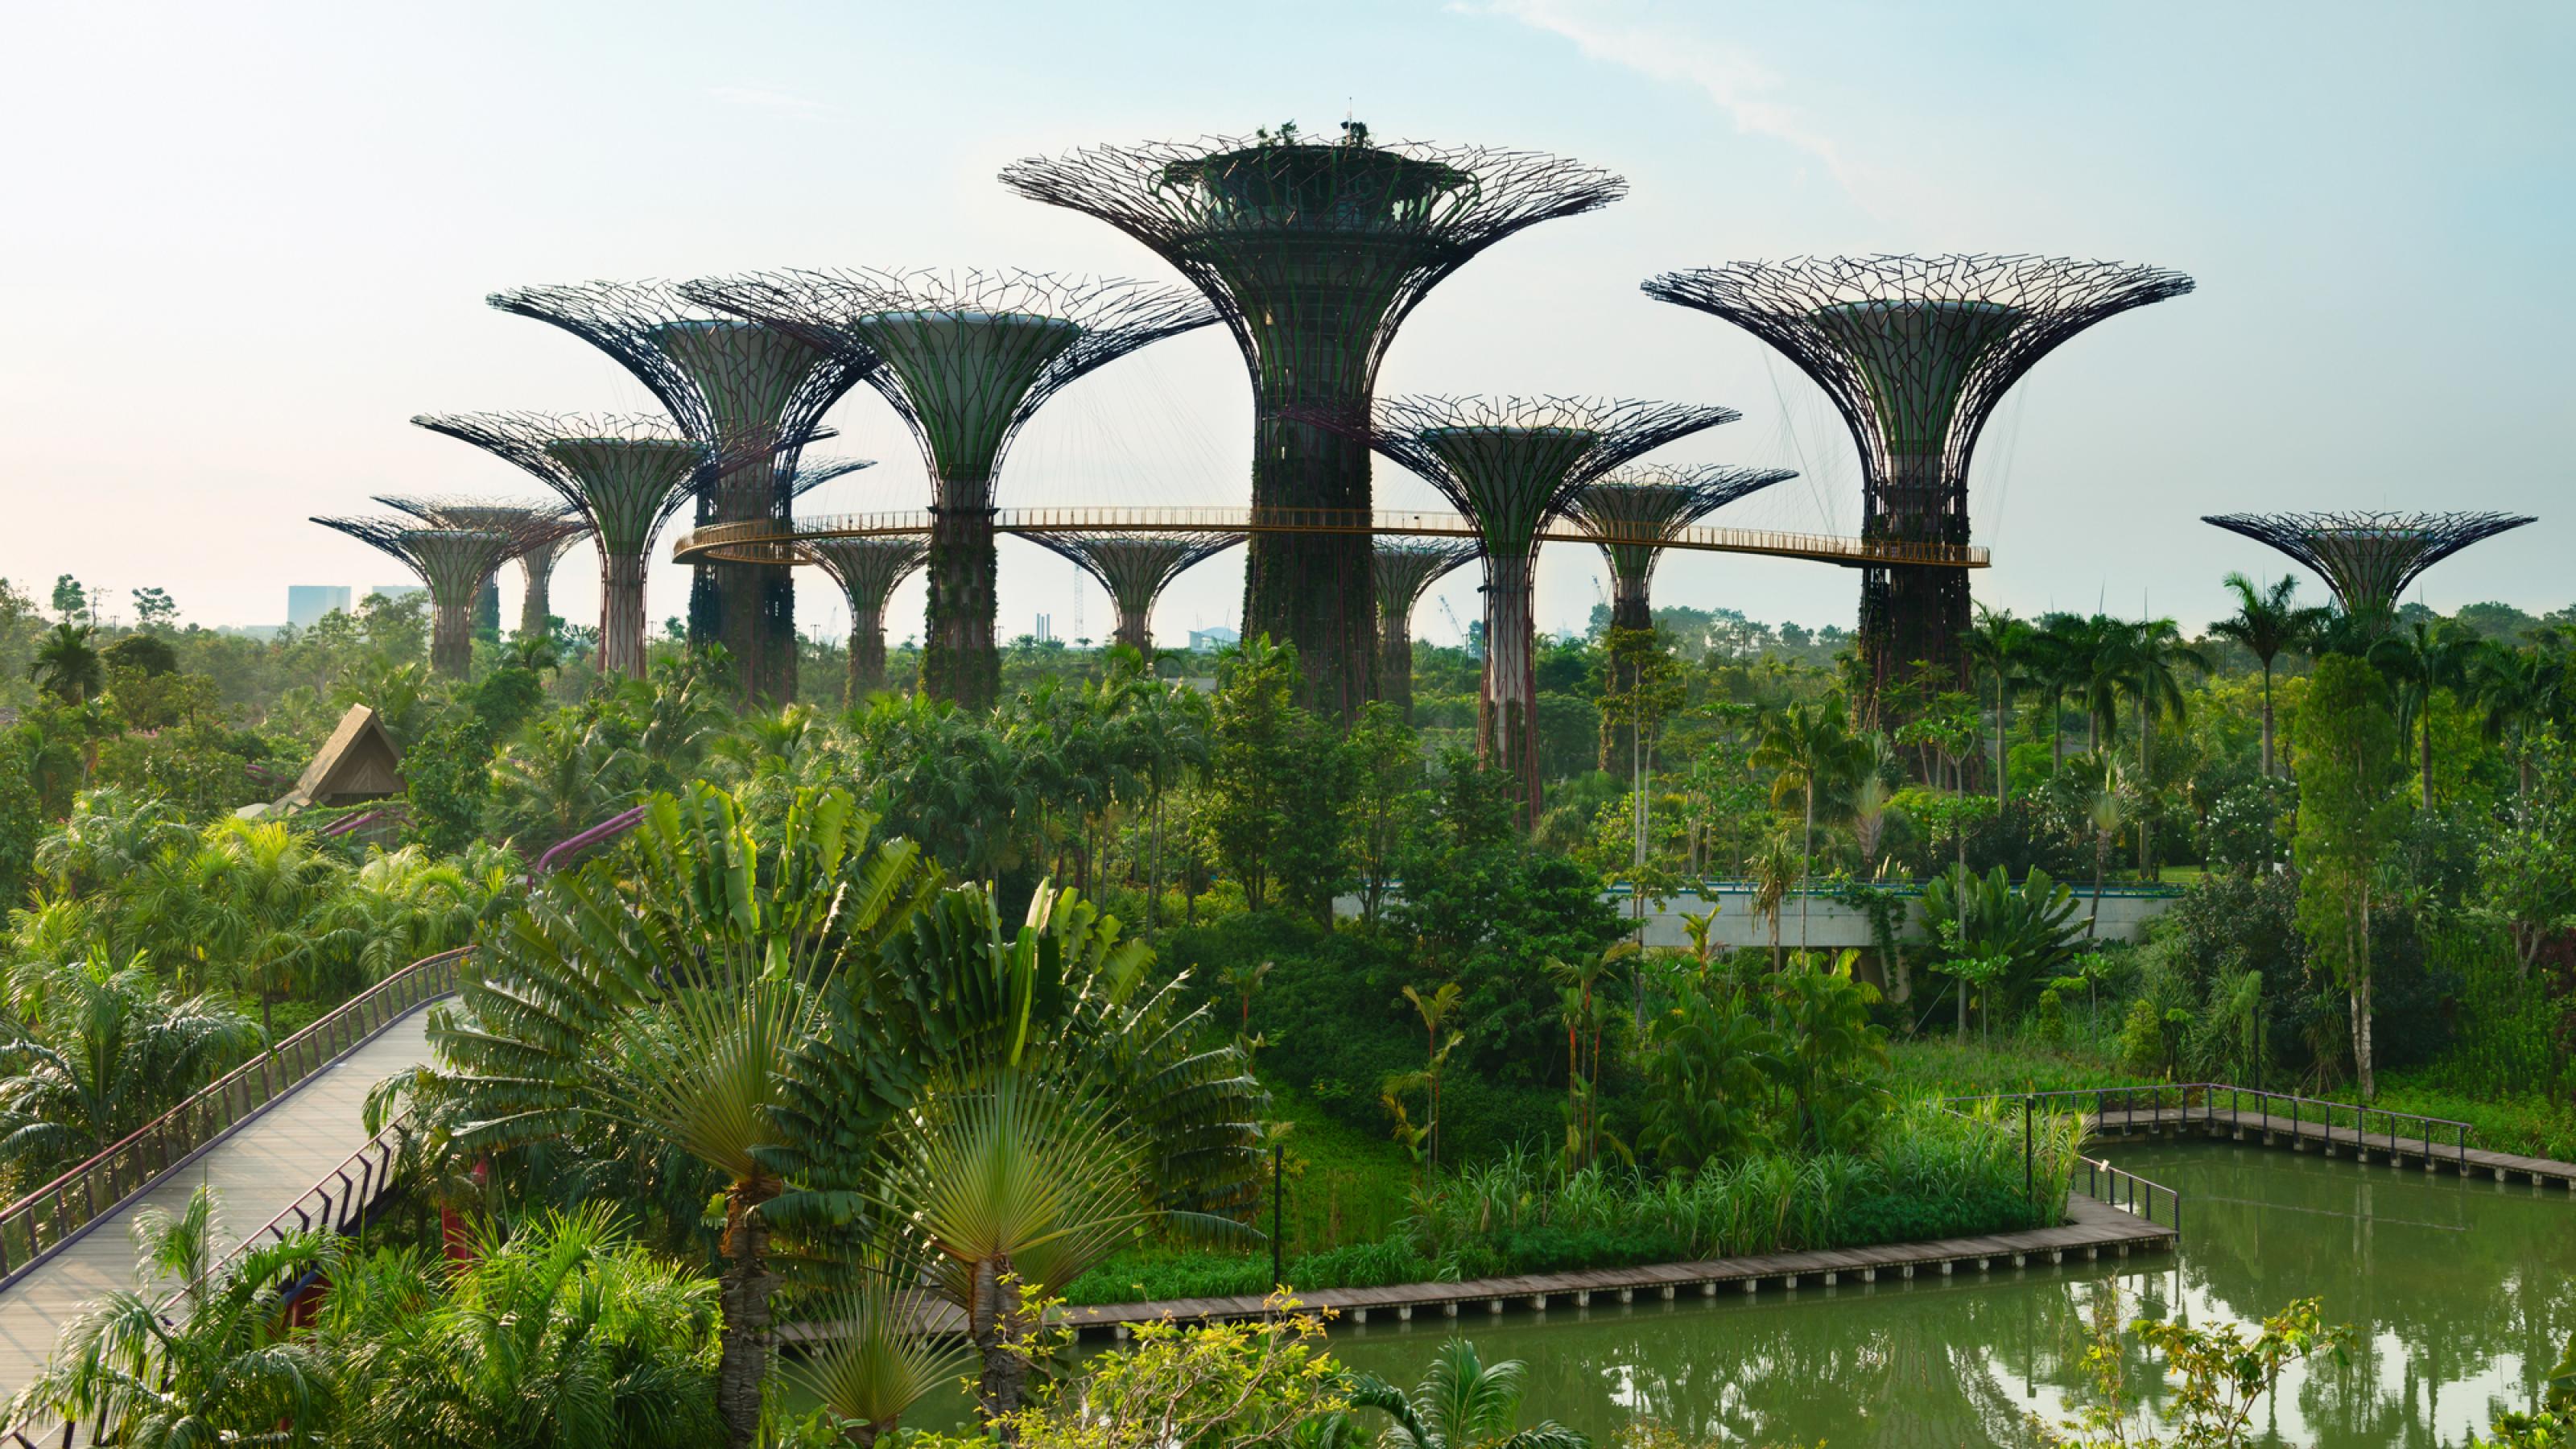 EIn palmenbestandener Park am Wasser, darüber elf fächerförmige, teils begrünte Stahlkonstruktionen